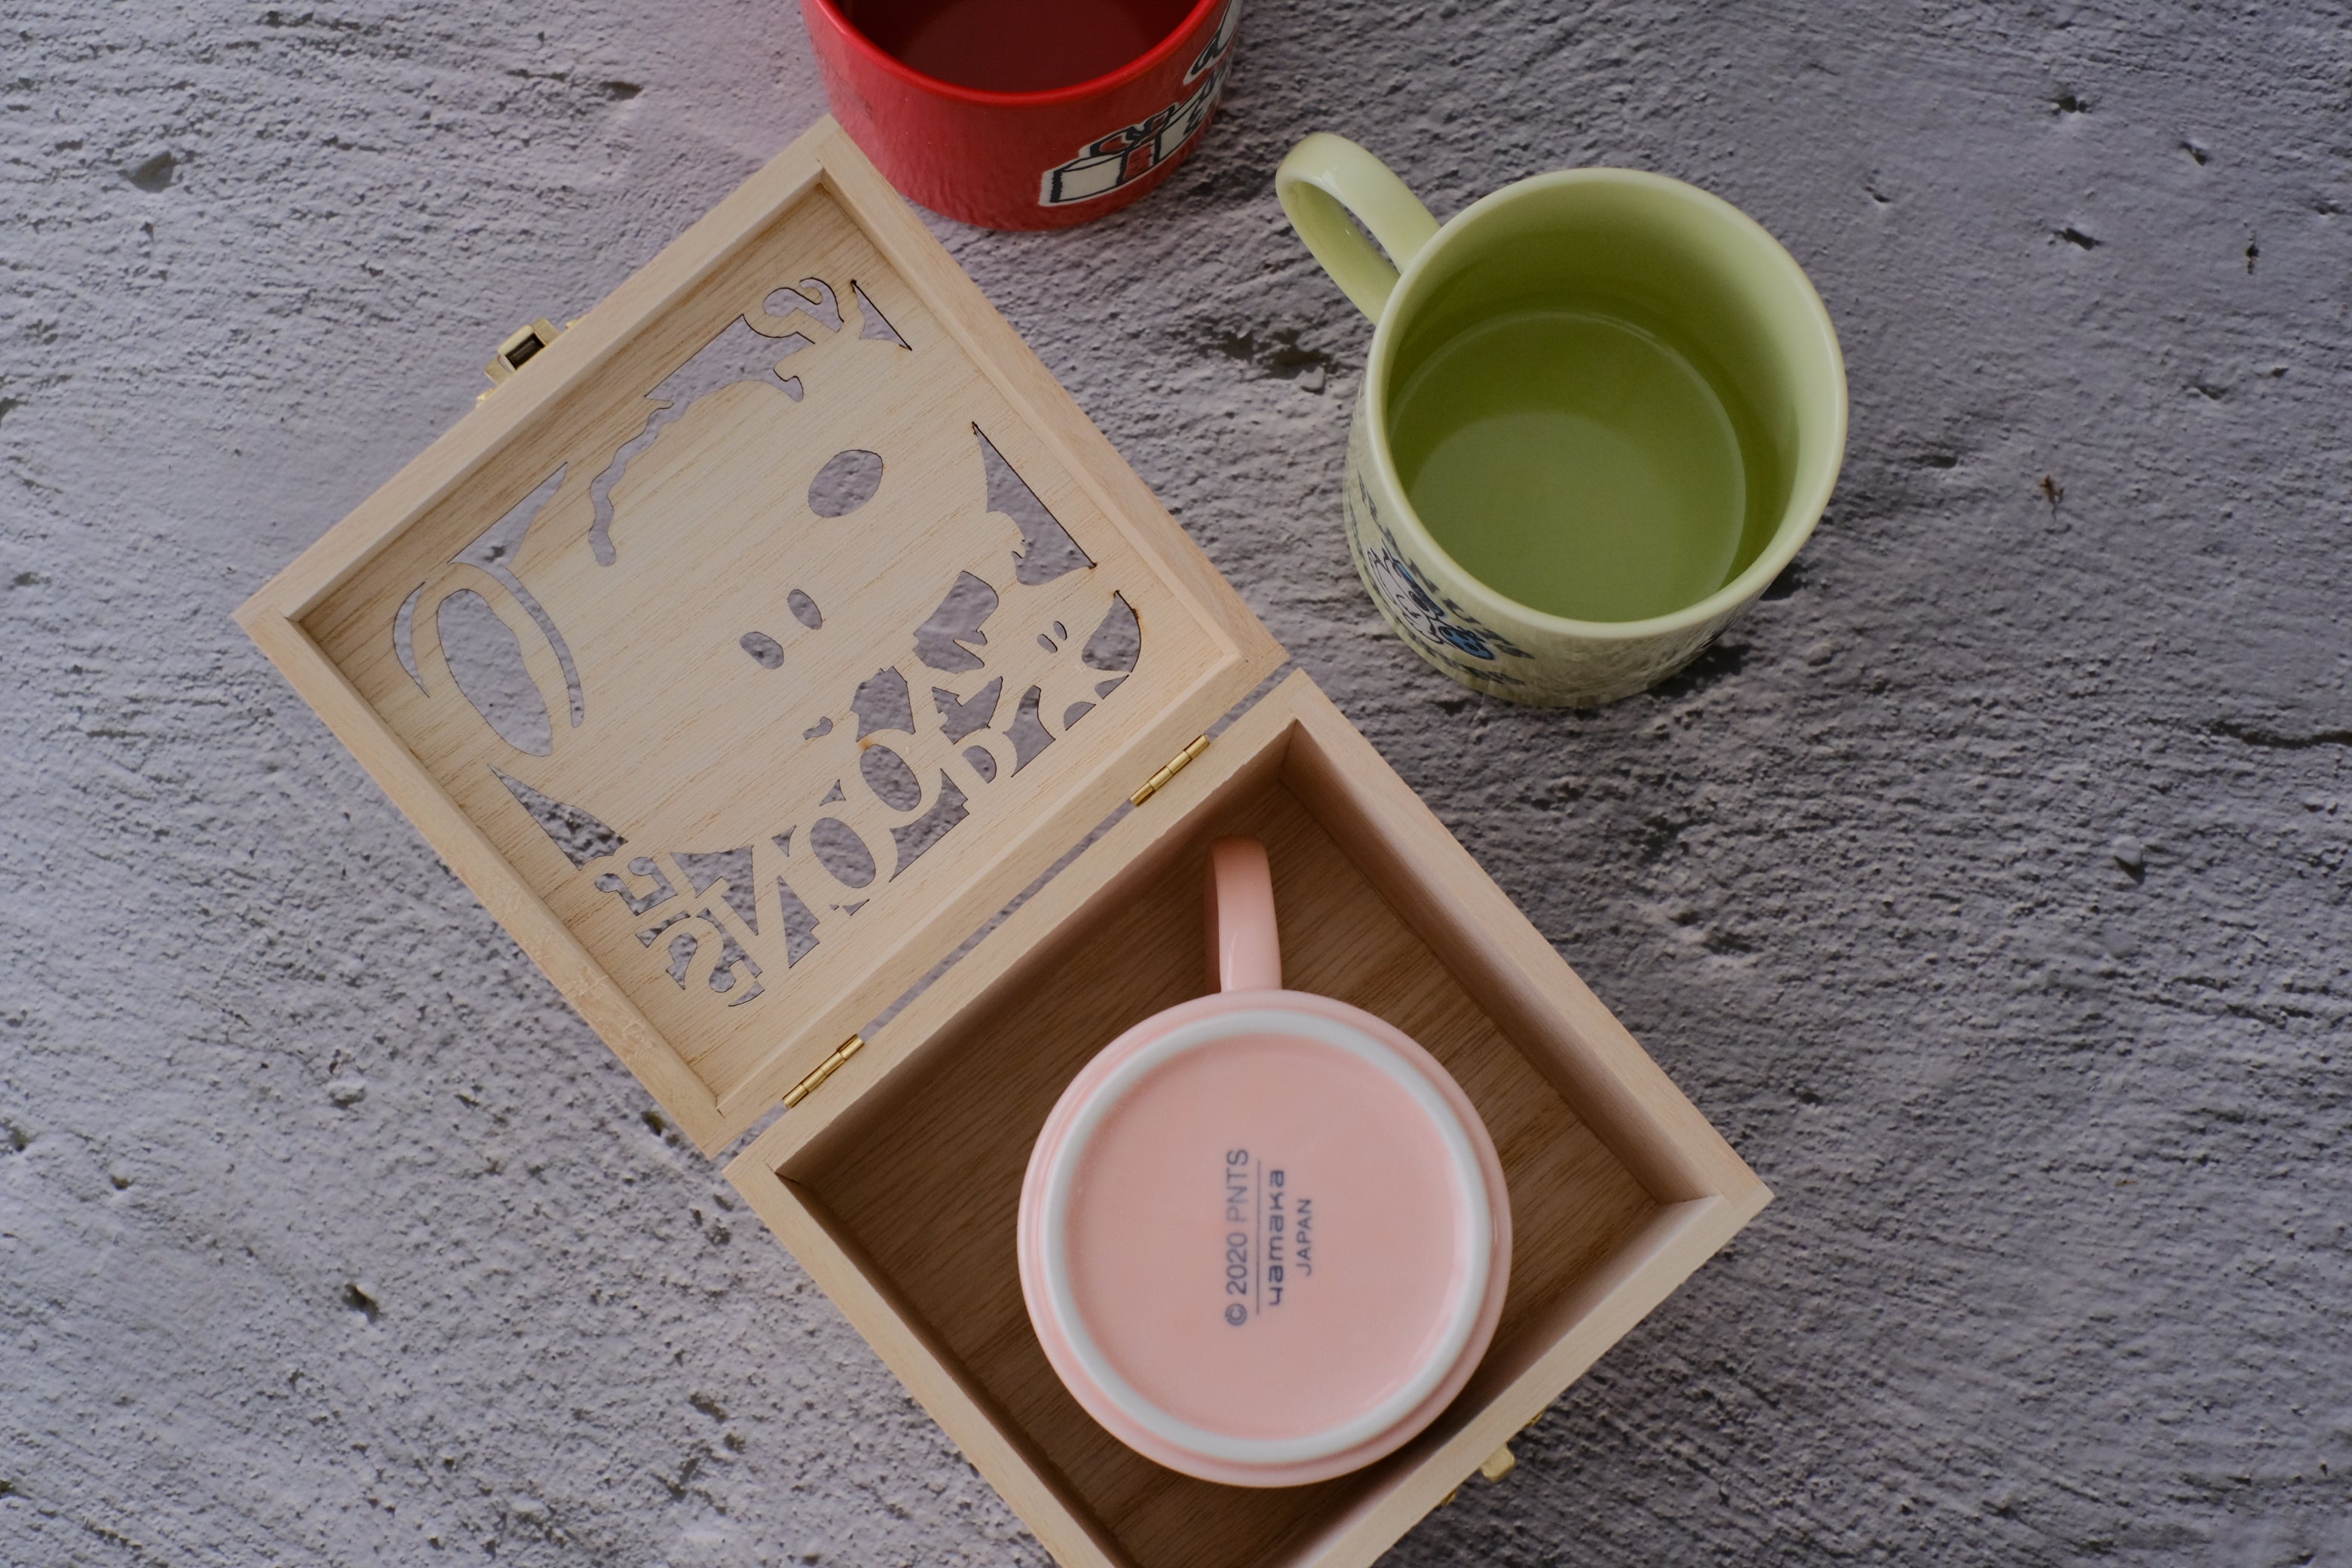 Peanuts Snoopy Japan Coffee Mug Cup in Wooden Lightbox